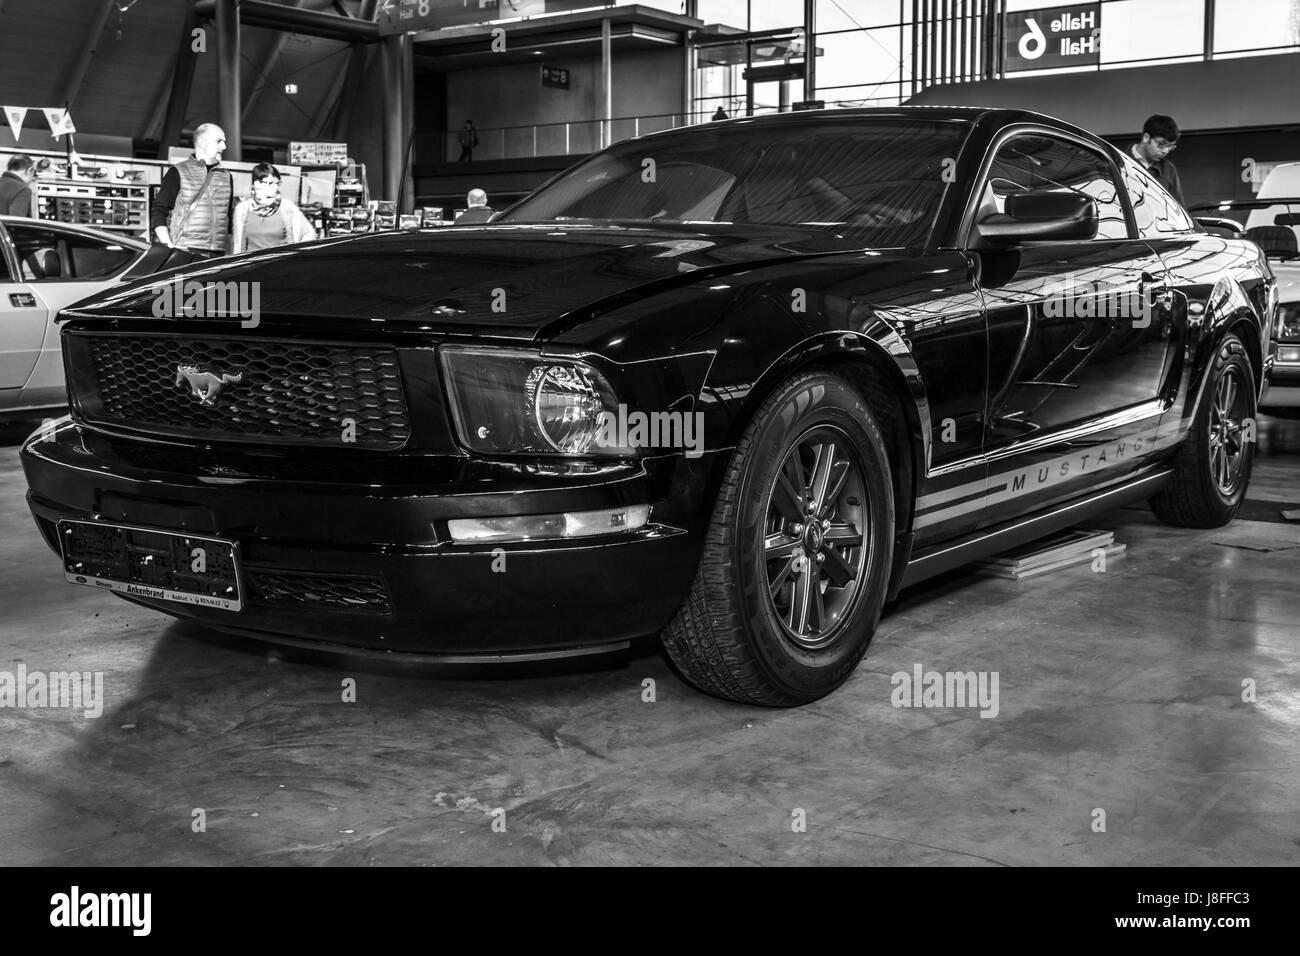 STUTTGART, ALLEMAGNE - Mars 04, 2017 : Pony car Ford Mustang V6 Coupé 2006. Noir et blanc. Plus grand d'Europe Exposition de voitures classiques 'RETRO' classiques Banque D'Images